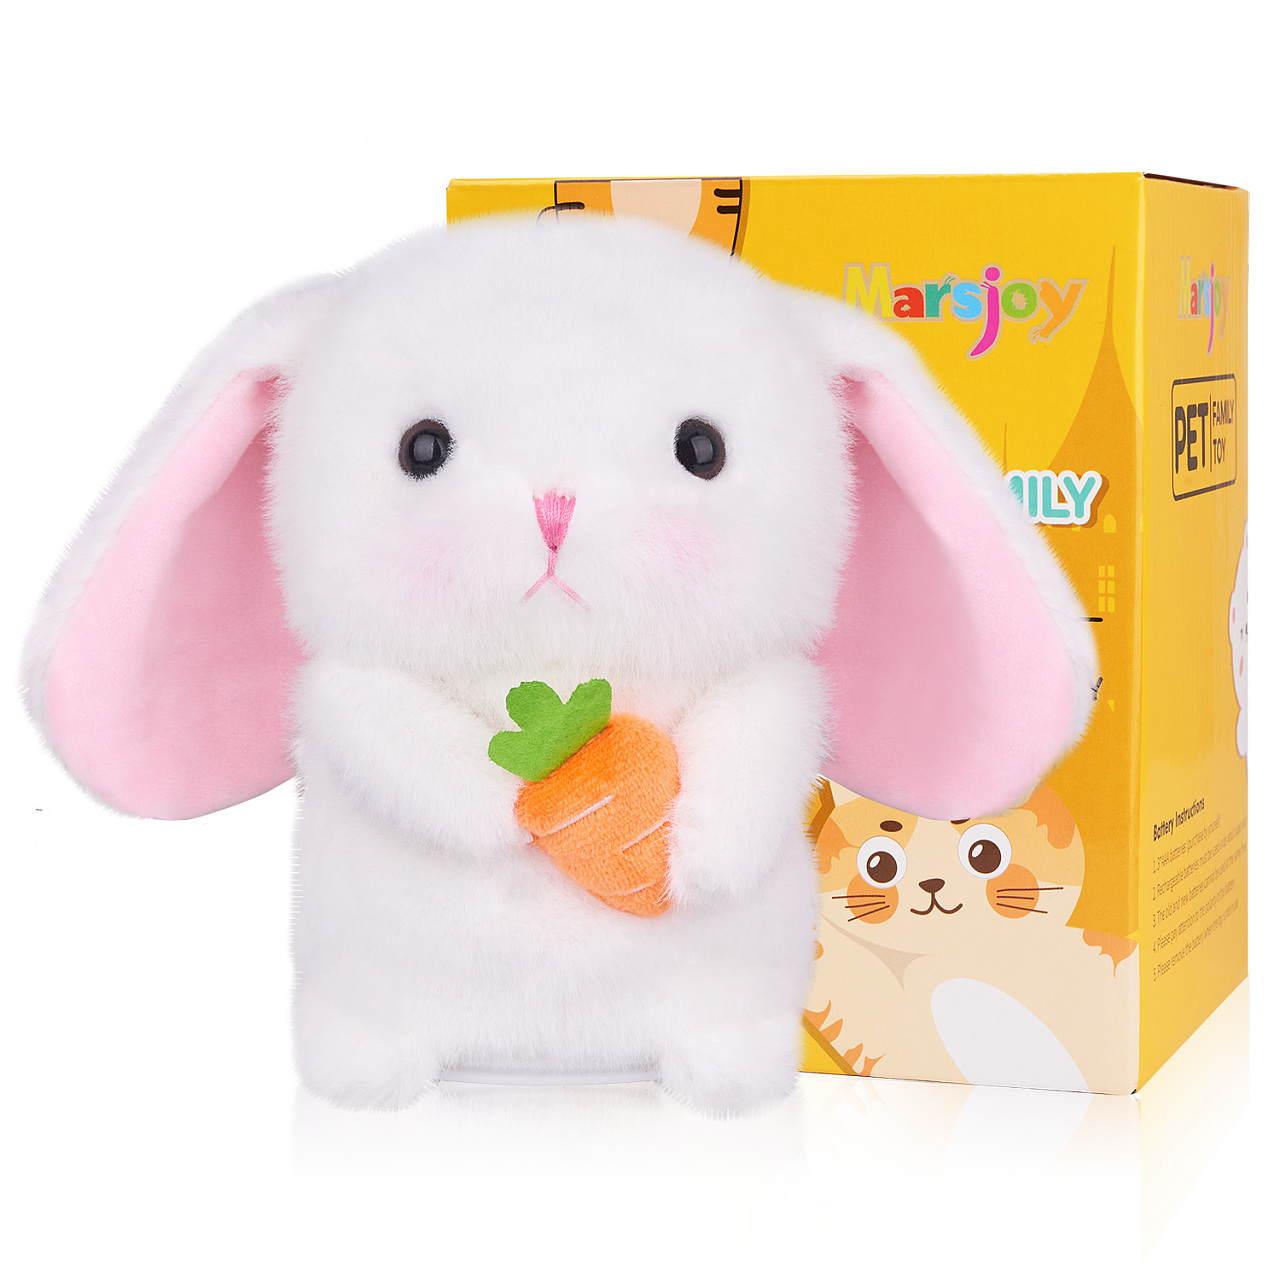 厂家直销卡通大号毛绒公仔兔子 创意毛绒玩具儿童公仔玩偶兔子-阿里巴巴